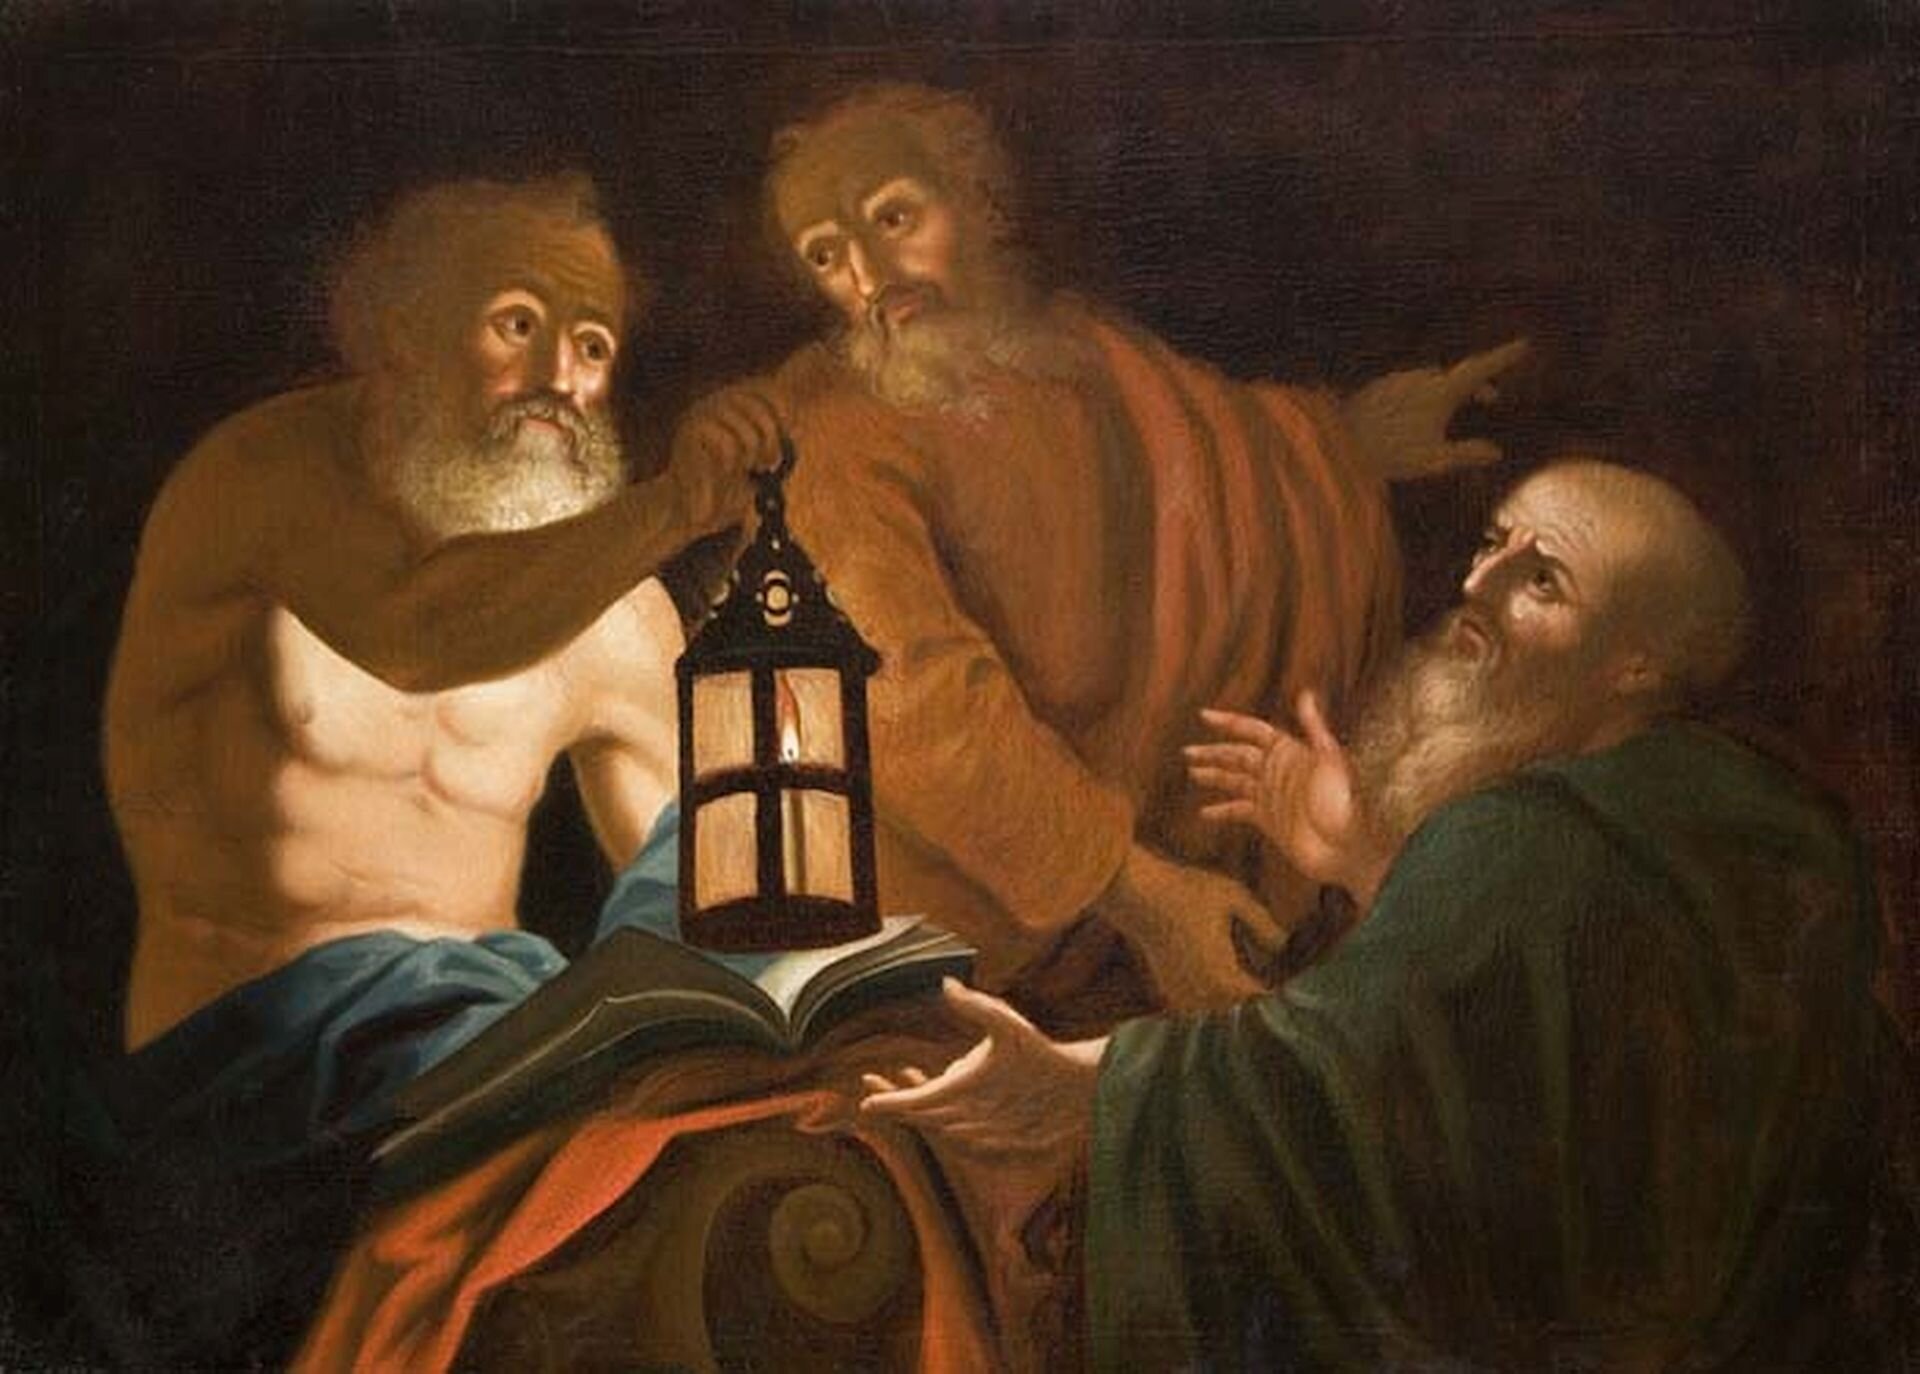 Ilustracja przedstawia półnagą postać Diogenesa w towarzystwie dwóch mężczyzn. W prawej ręce greckiego filozofa widoczna jest zapalona latarnia, zaś na kolanach znajduje się księga.